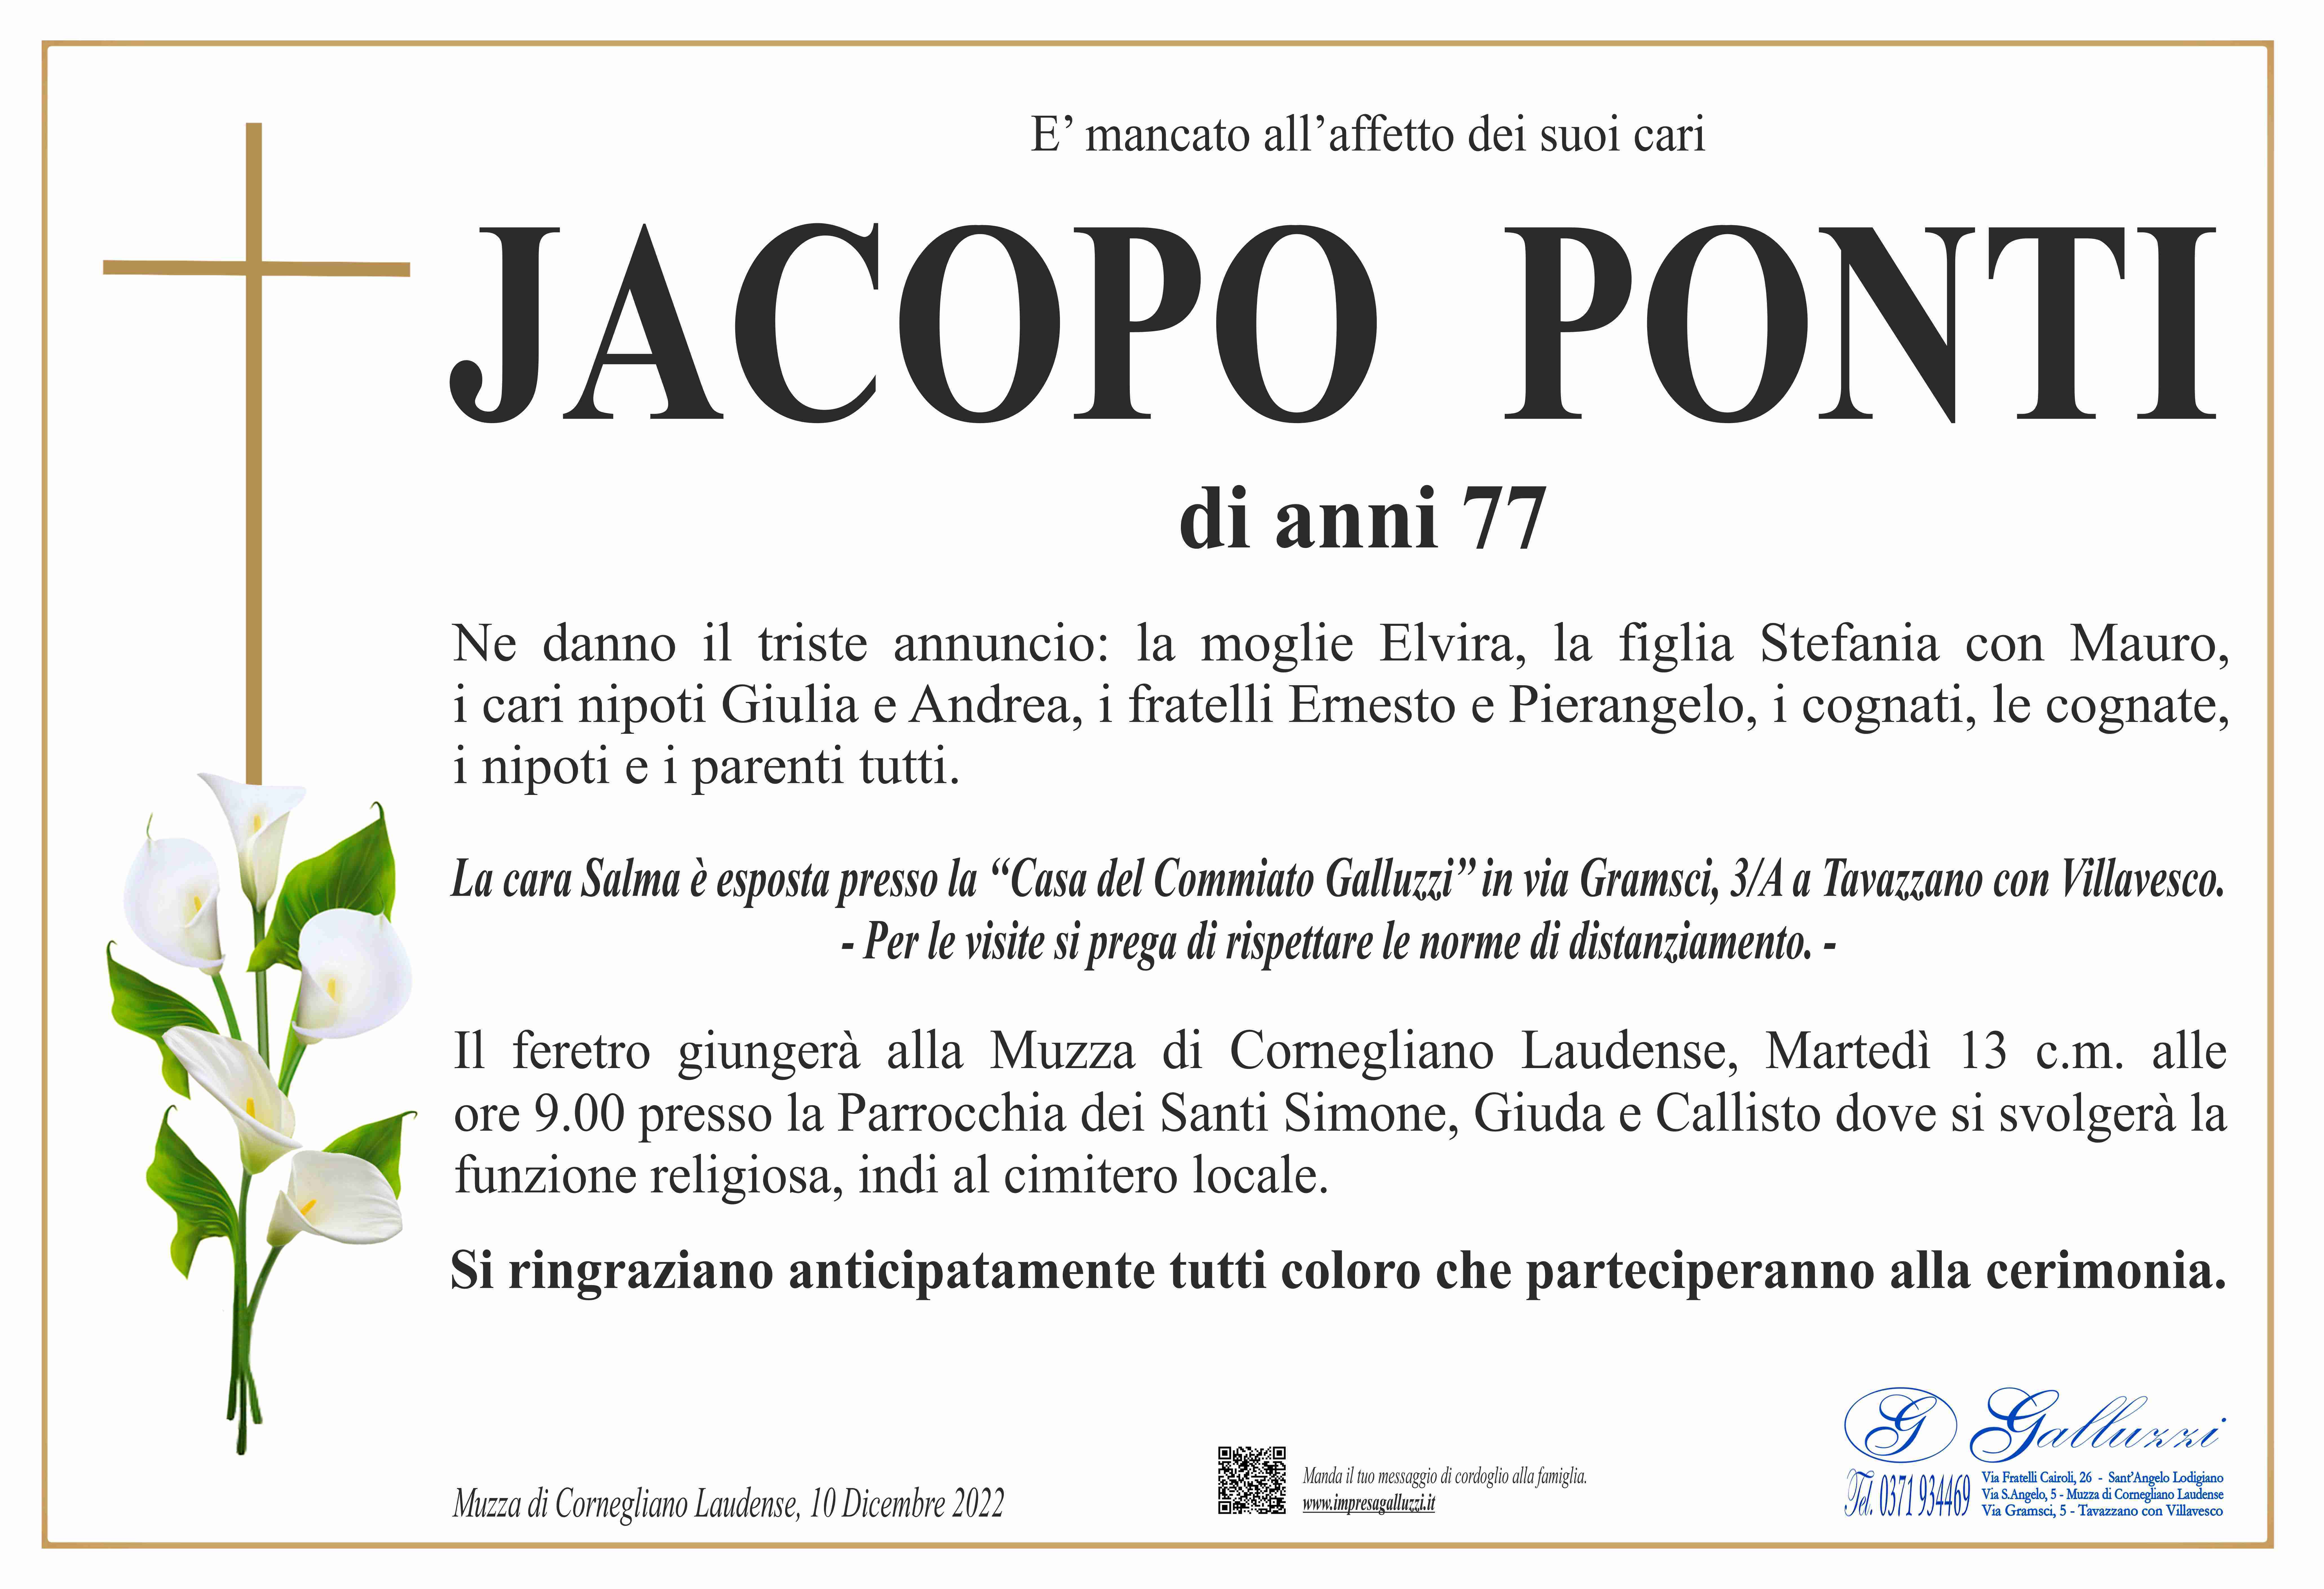 Jacopo Ponti